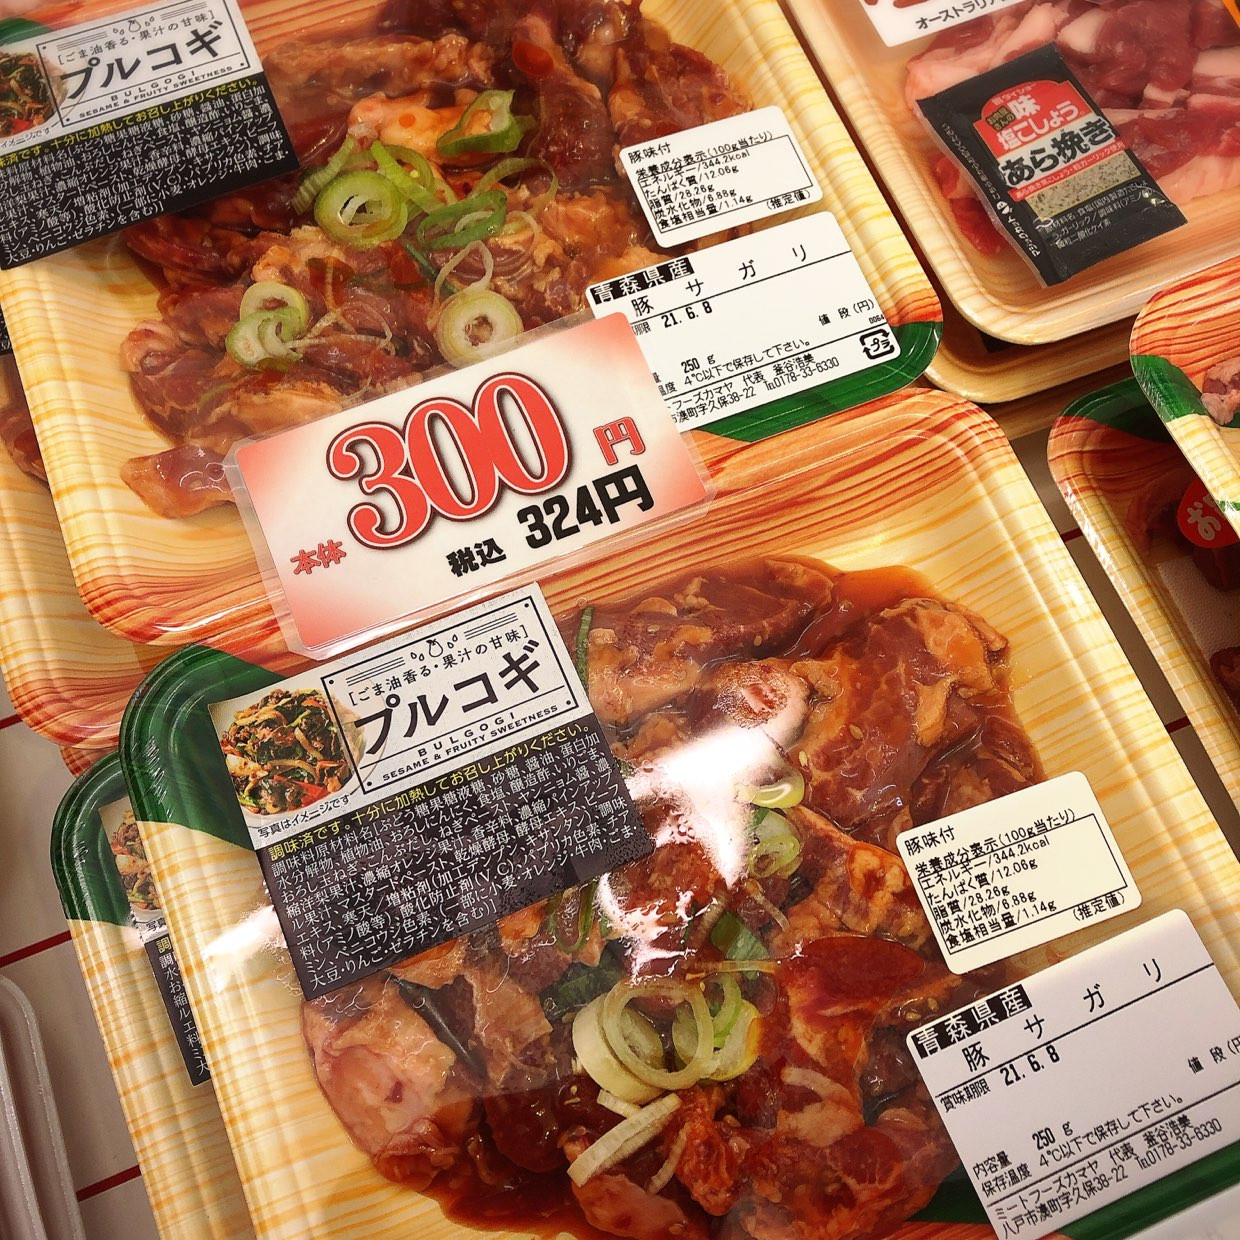 本日は青森県産豚サガリプルコギがお買得です。